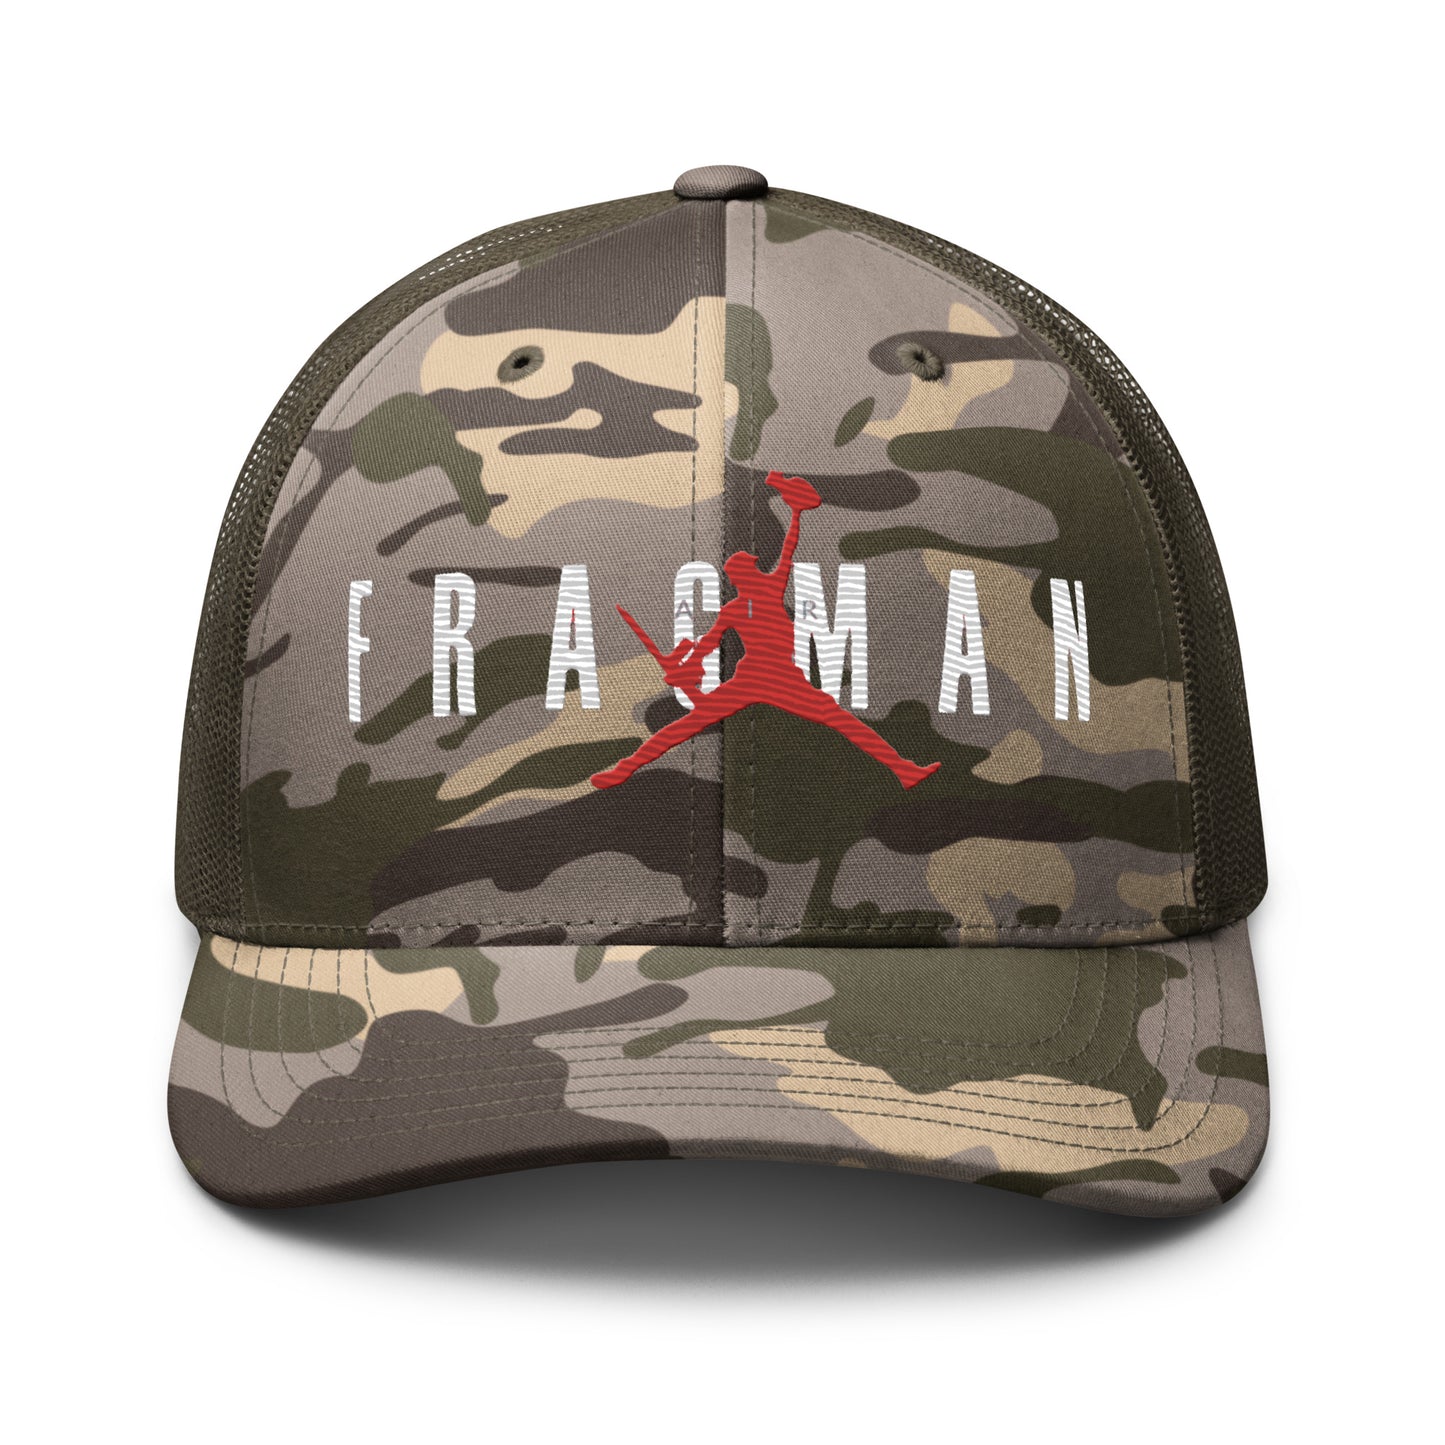 Air Fragman Camouflage trucker hat